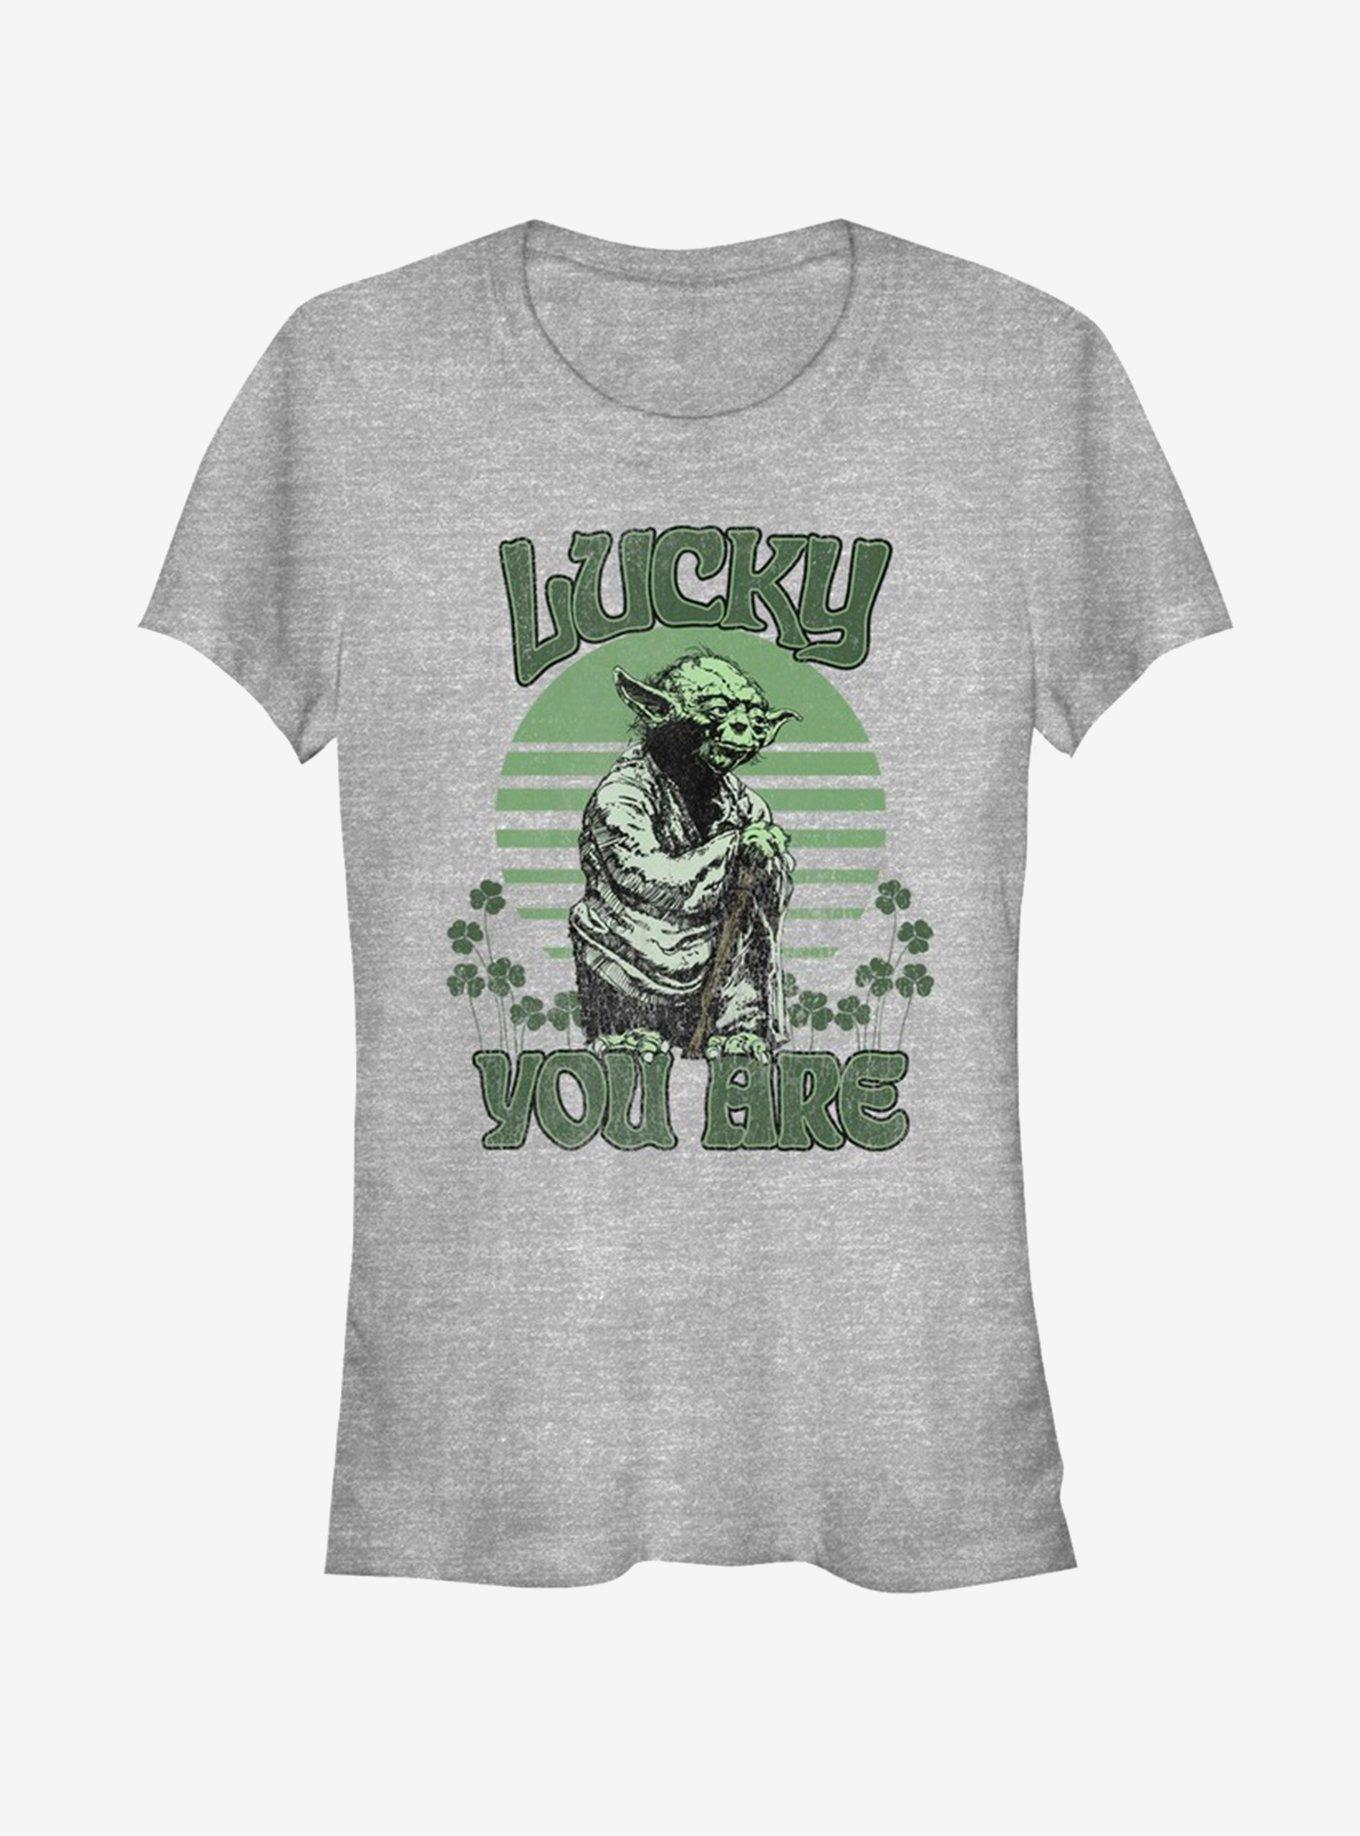 Lucasfilm Star Wars Lucky Is Yoda Girls T-Shirt